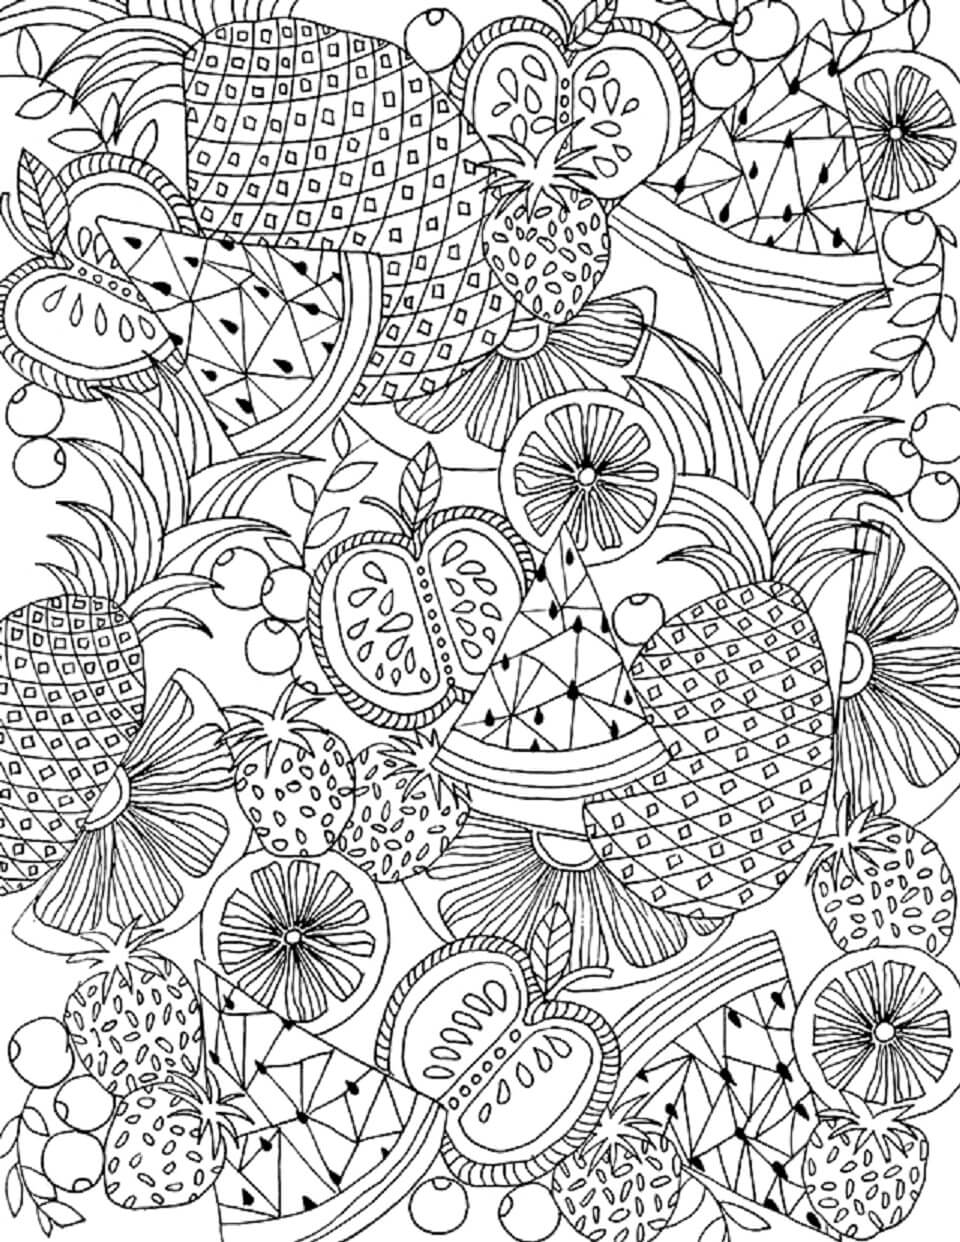 Mandala Fruits in Summer Coloring Page - Sheet 1 Mandalas